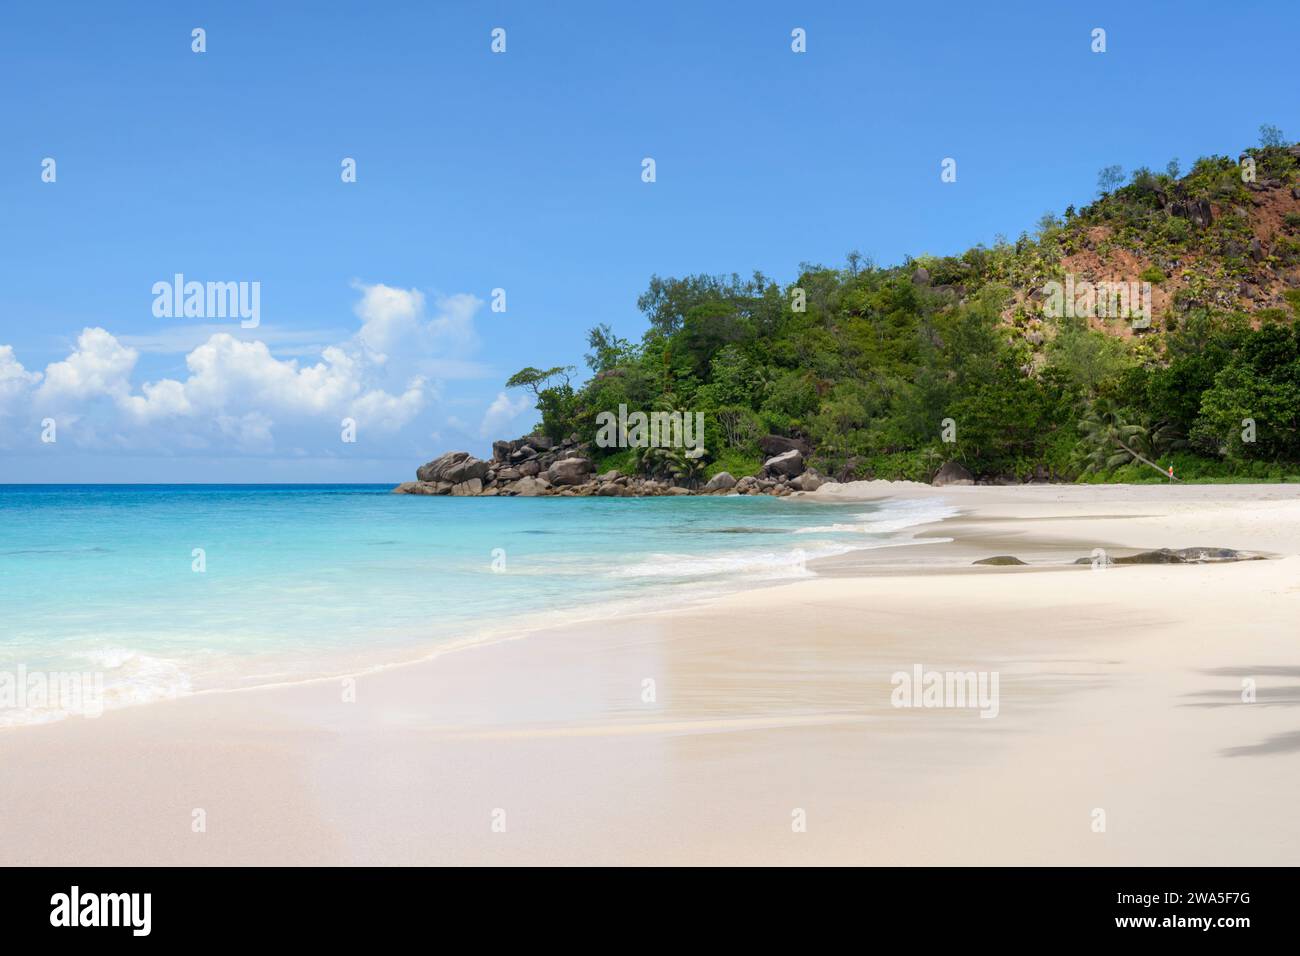 Plage d'Anse Georgette, île de Praslin, Seychelles, océan Indien Banque D'Images